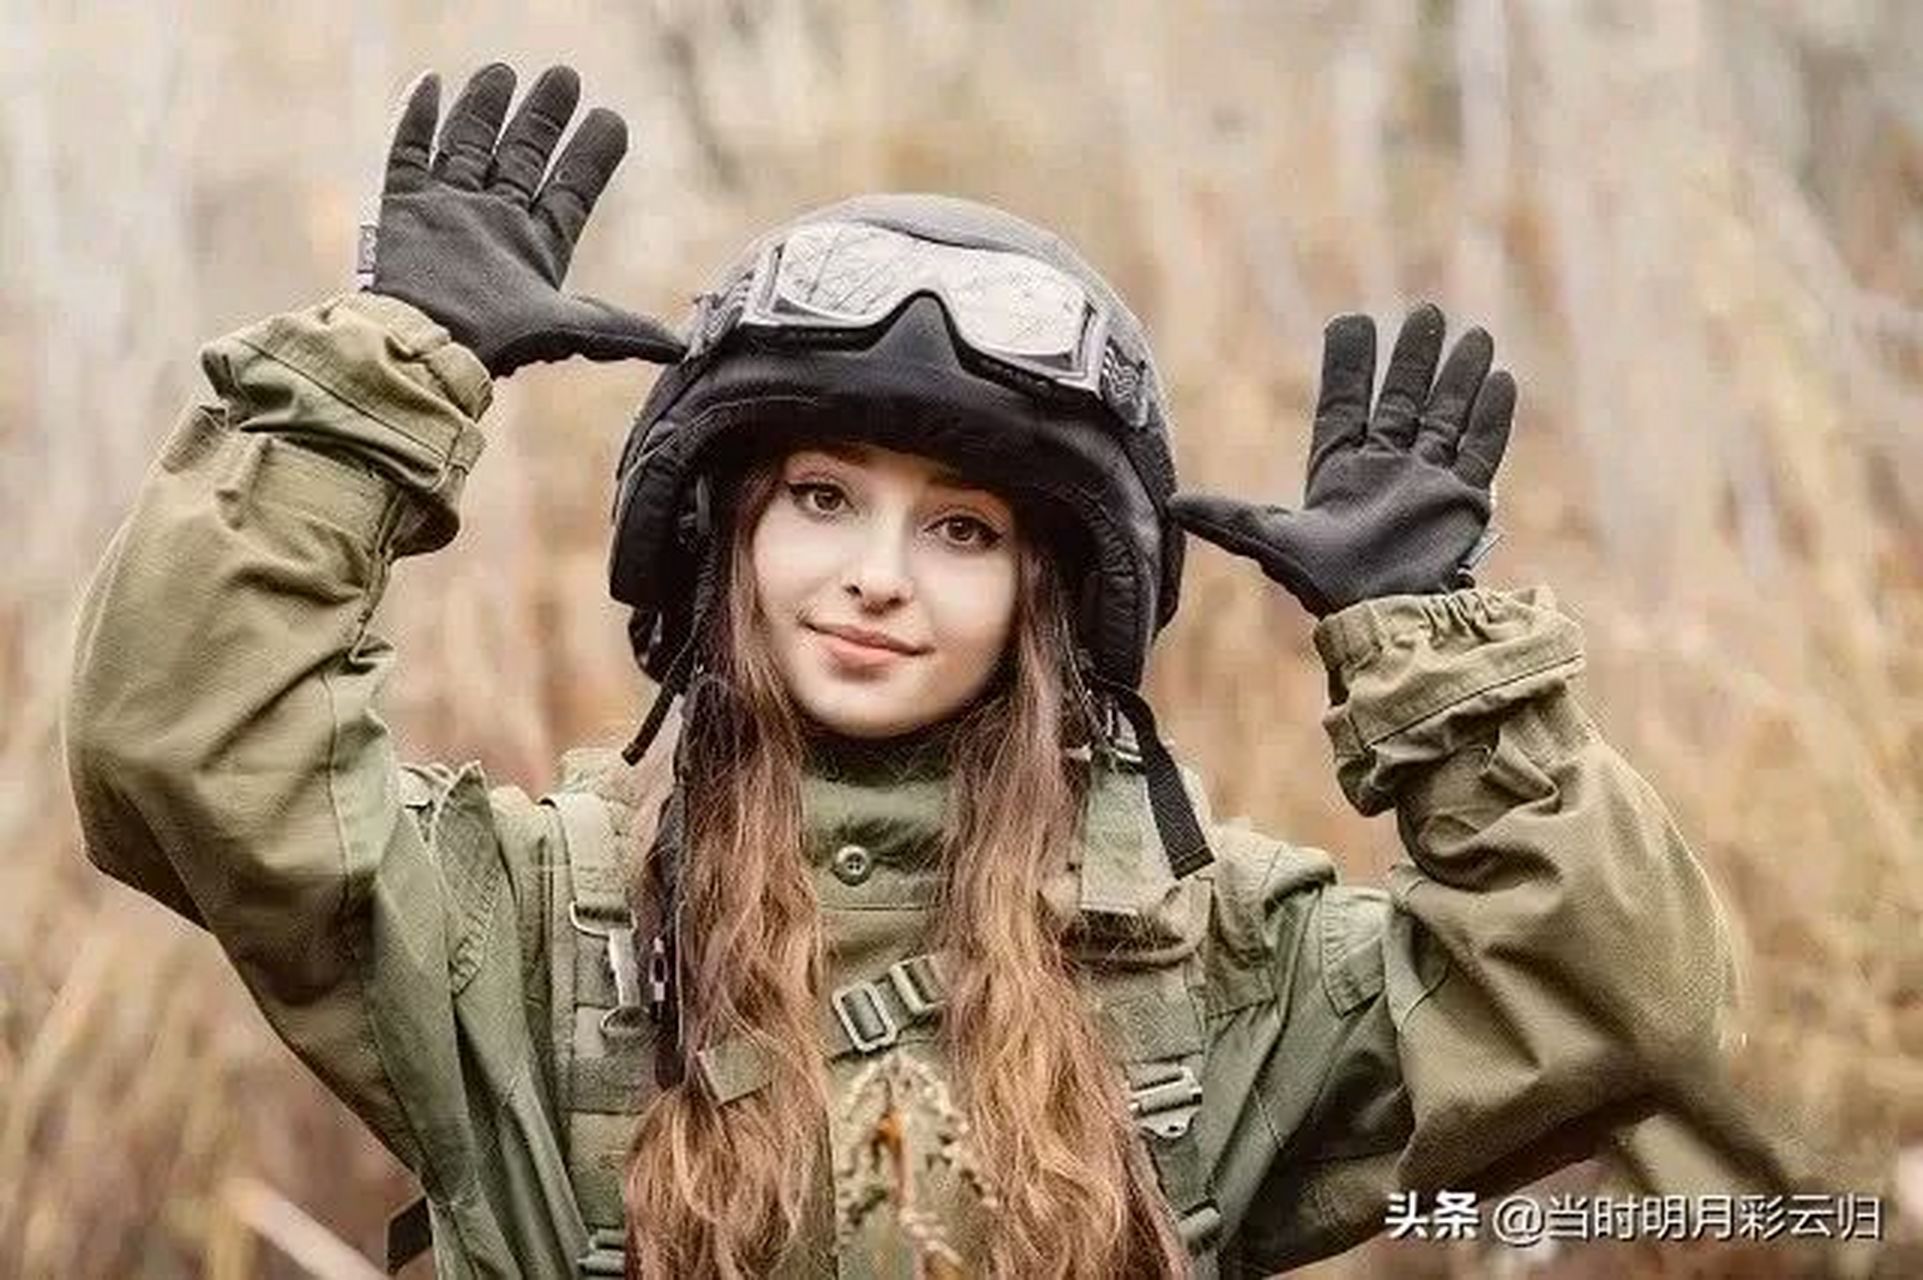 彪悍的车臣士兵和娇美的乌克兰女兵 #领动计划# 乌克兰盛产美女